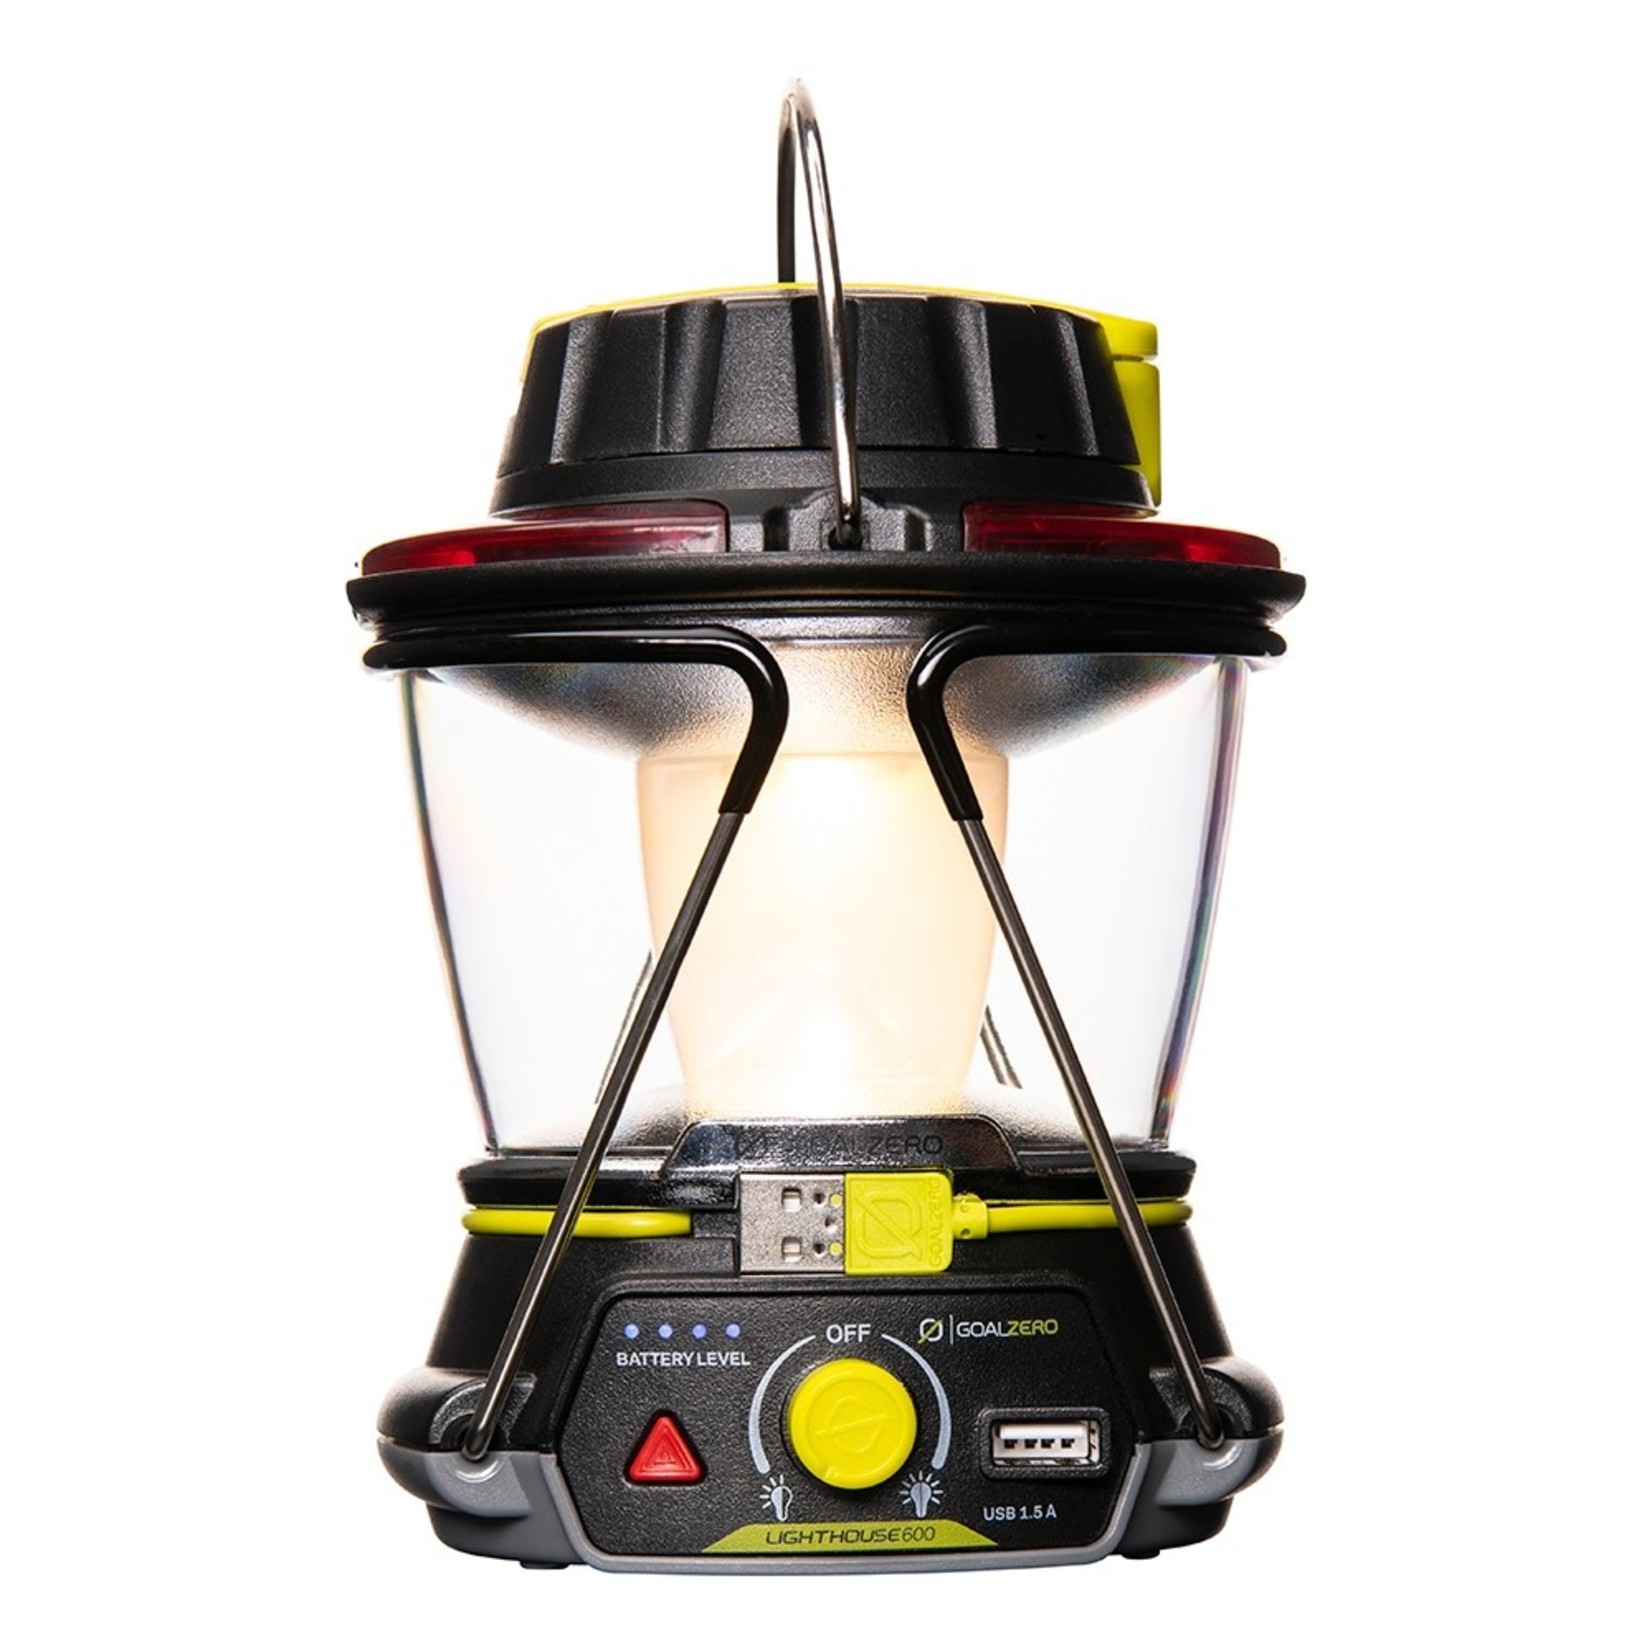 GOALZERO GOAL ZERO Lighthouse 600 Lantern & USB Power Hub